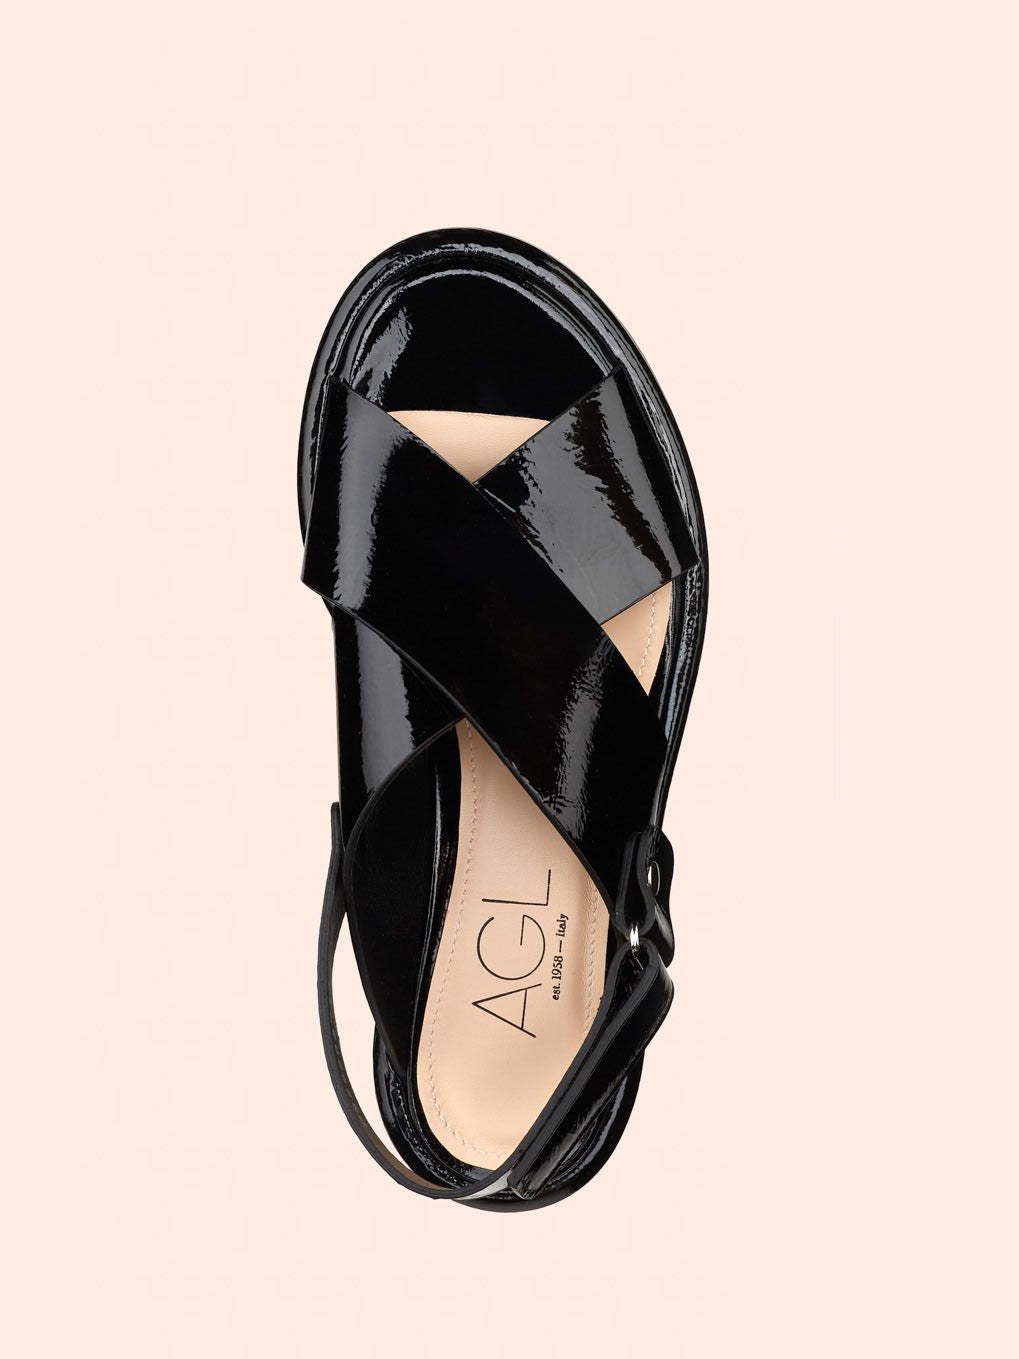 Alison criss sandals, patent black